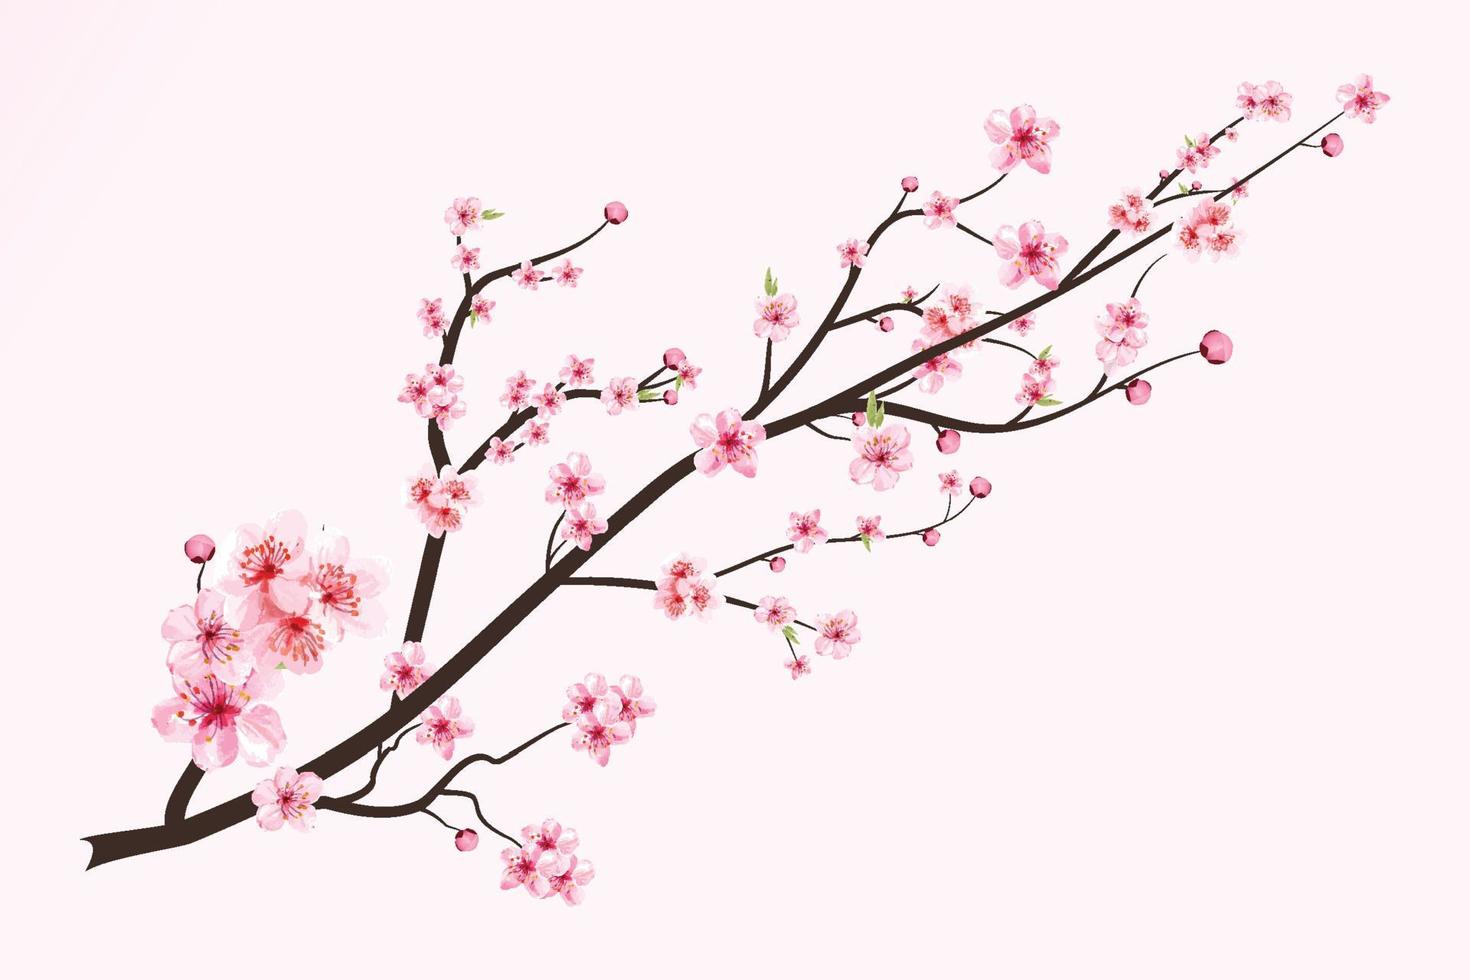 fiore di ciliegio con fiore di sakura in fiore acquerello. vettore di fiori di ciliegio giapponese. vettore realistico del fiore di ciliegia dell'acquerello. ramo di sakura con fiore ad acquerello. fiore di ciliegio dell'acquerello.